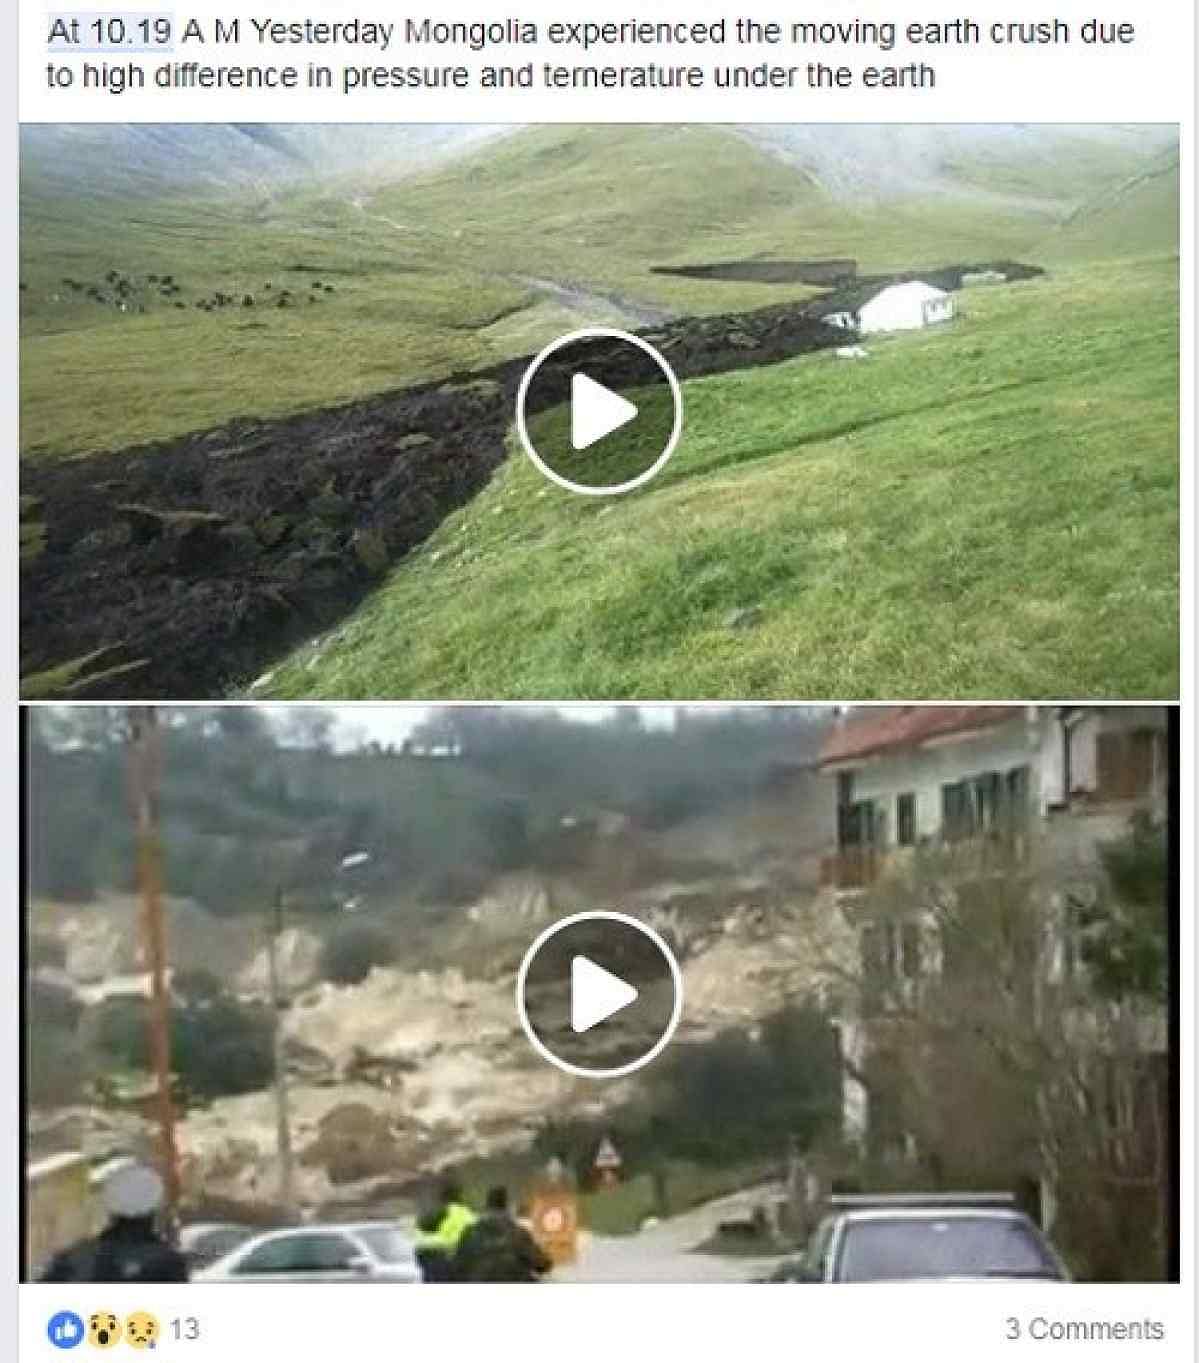 वायरल पोस्ट में दिखाए जा रहे दोनों वीडियो मंगोलिया के नहीं हैं. इनका एक-दूसरे से कोई ताल्लुक नहीं है. 